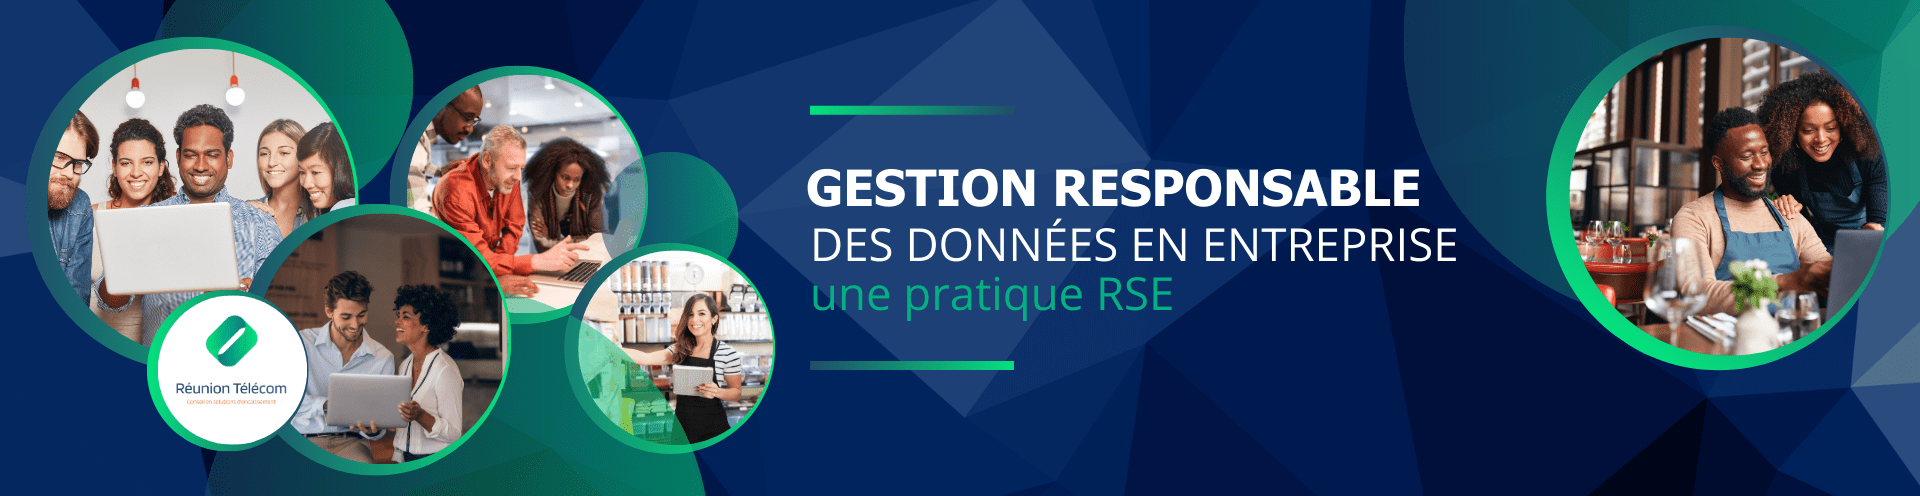 Gestion responsable des données en entreprise - RSE - Réunion Télécom